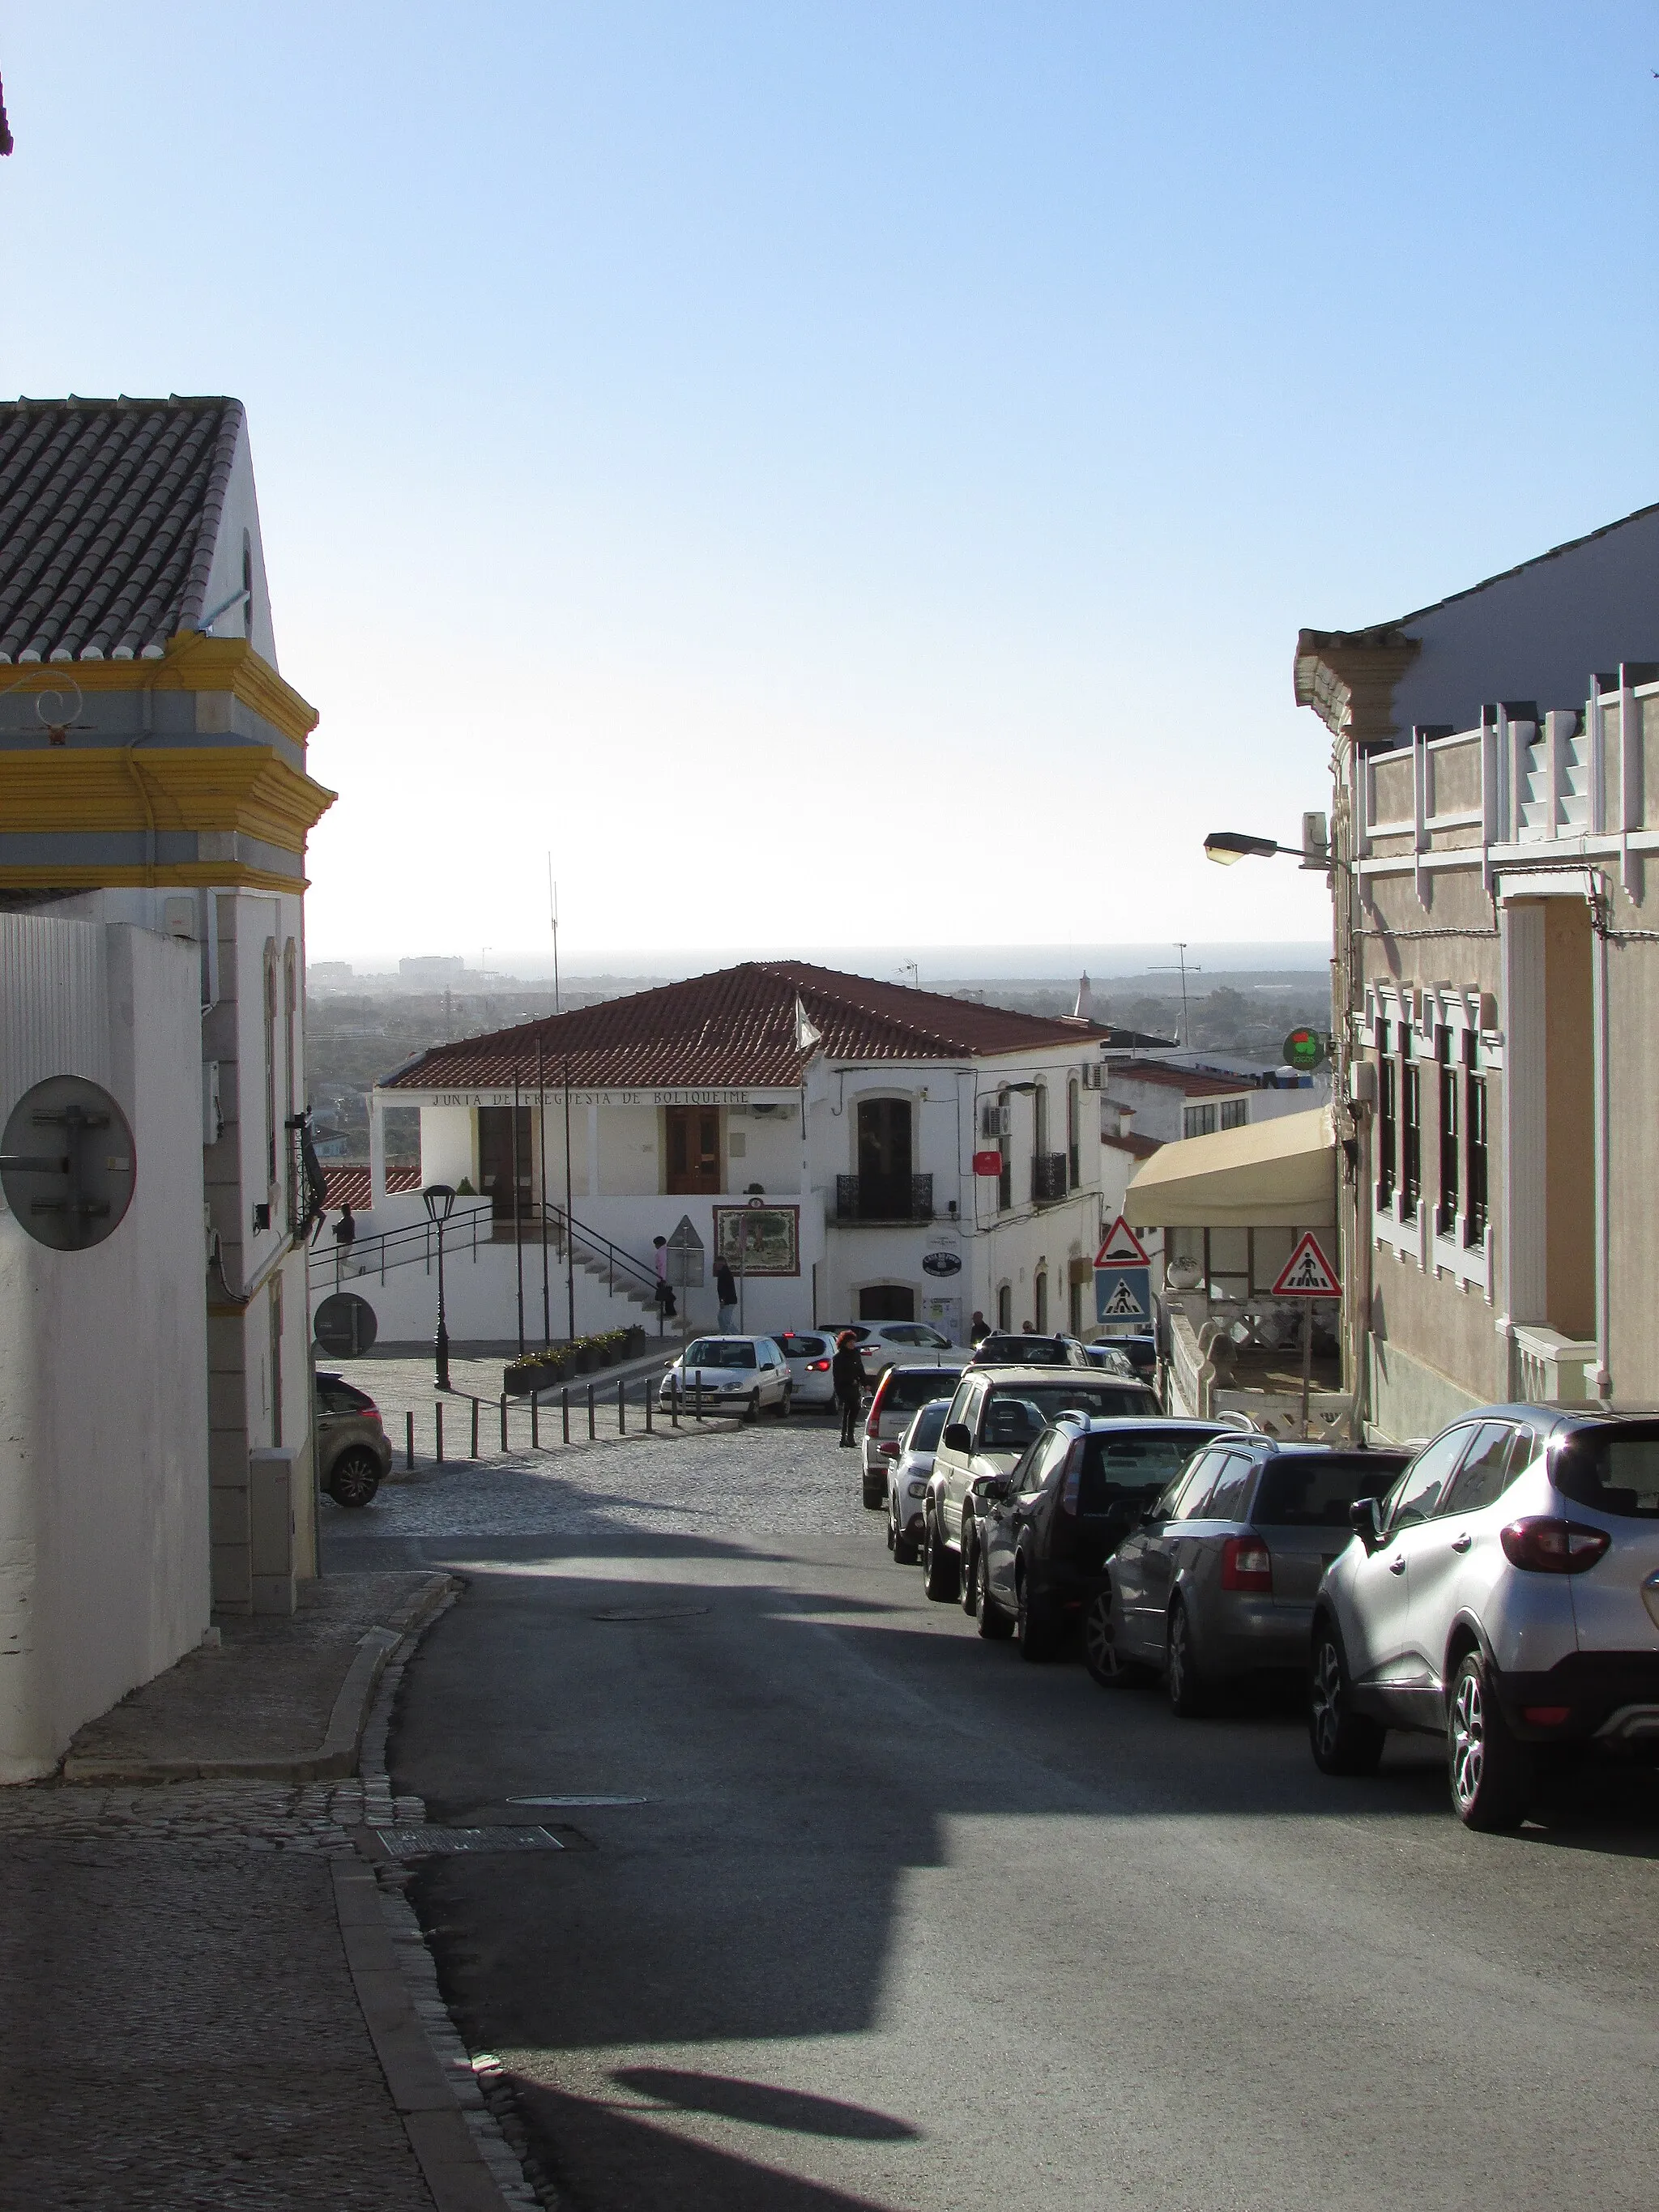 Image of Algarve